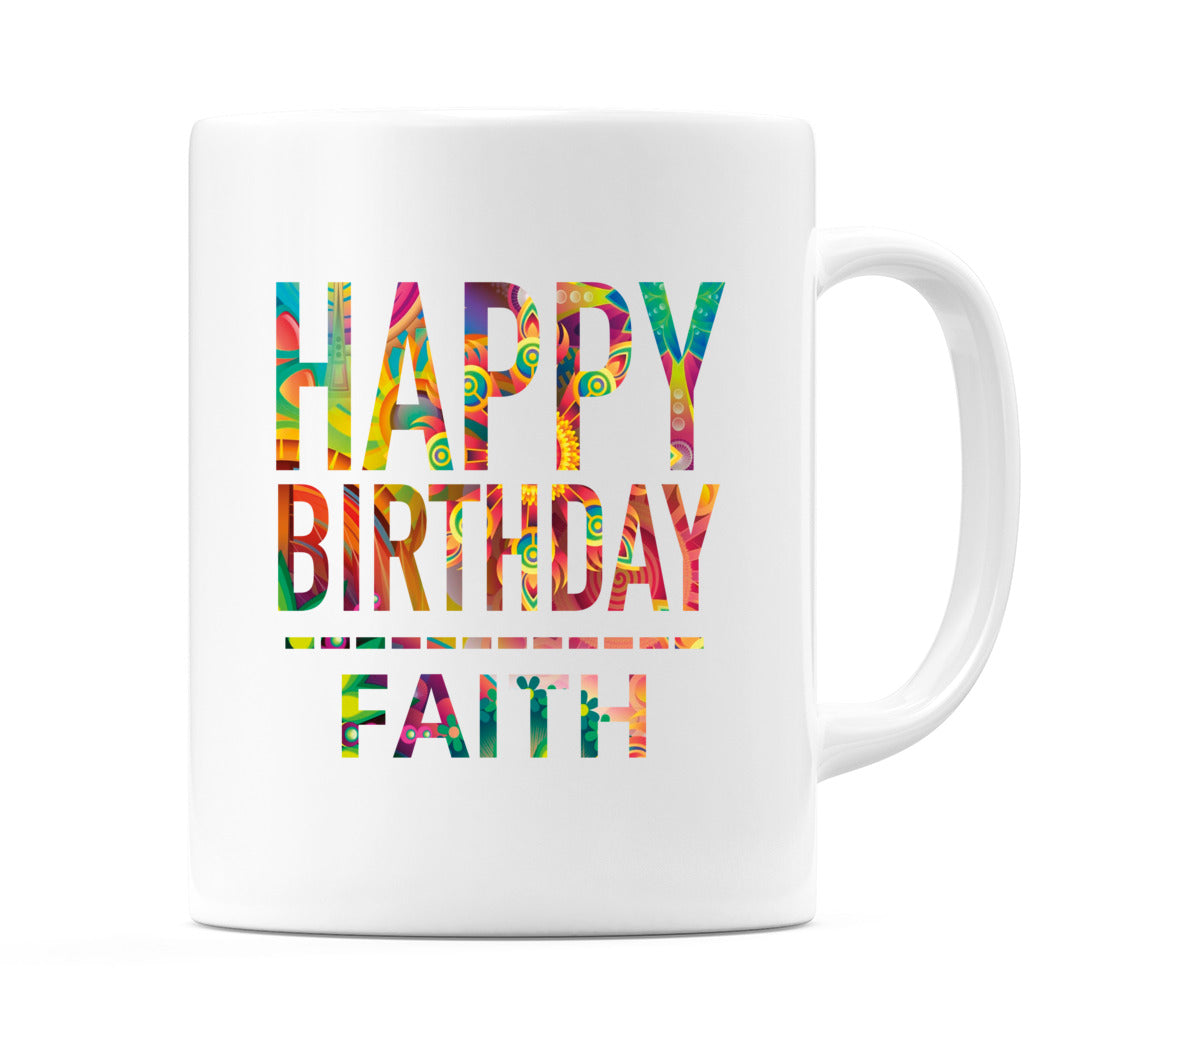 Happy Birthday Faith (Tie Dye Effect) Mug Cup by WeDoMugs